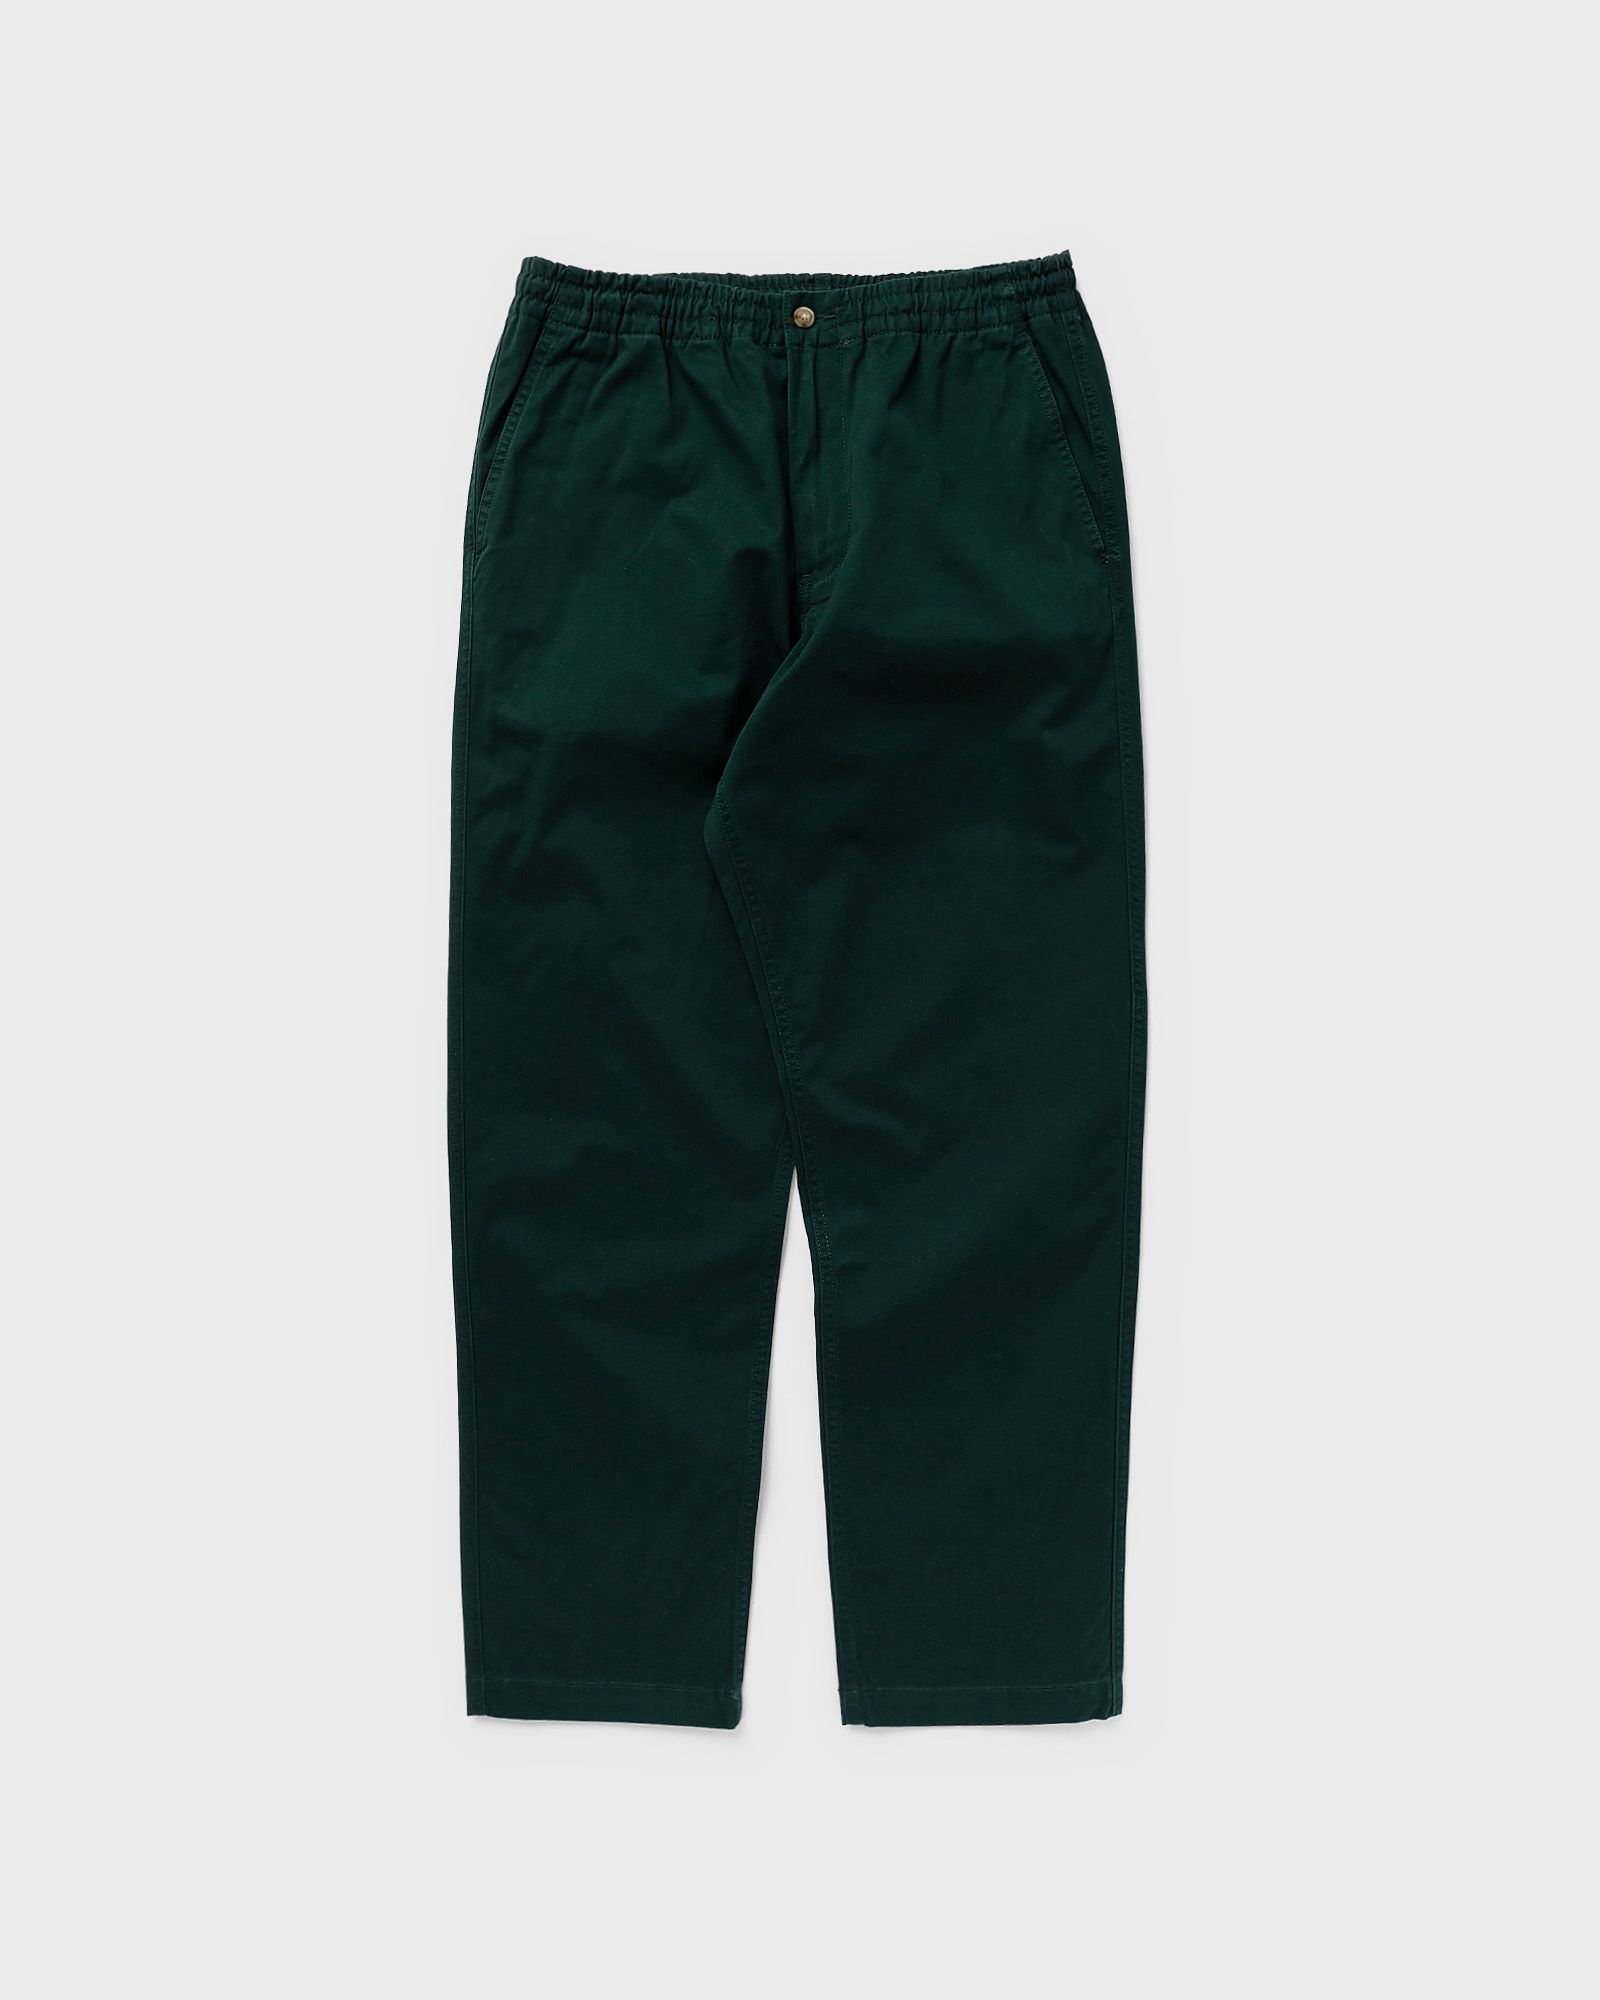 Polo Ralph Lauren - cfprepsterp-flat-pant men casual pants green in größe:xl